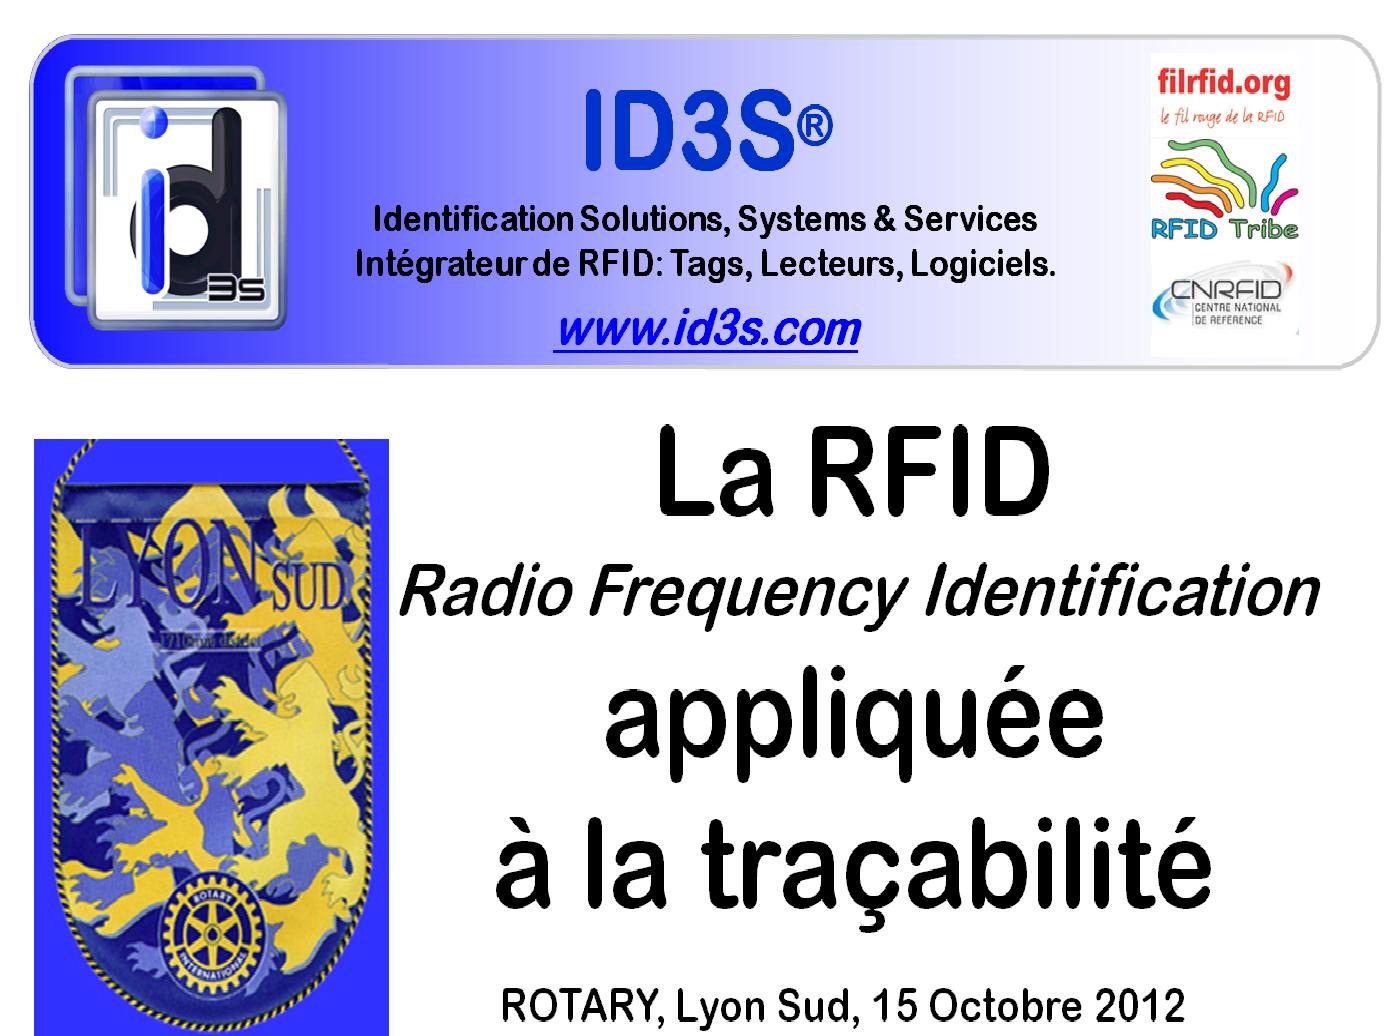 ID3S conviée à présenter la RFID appliquée à la traçabilté par le ROTARY de Lyon.